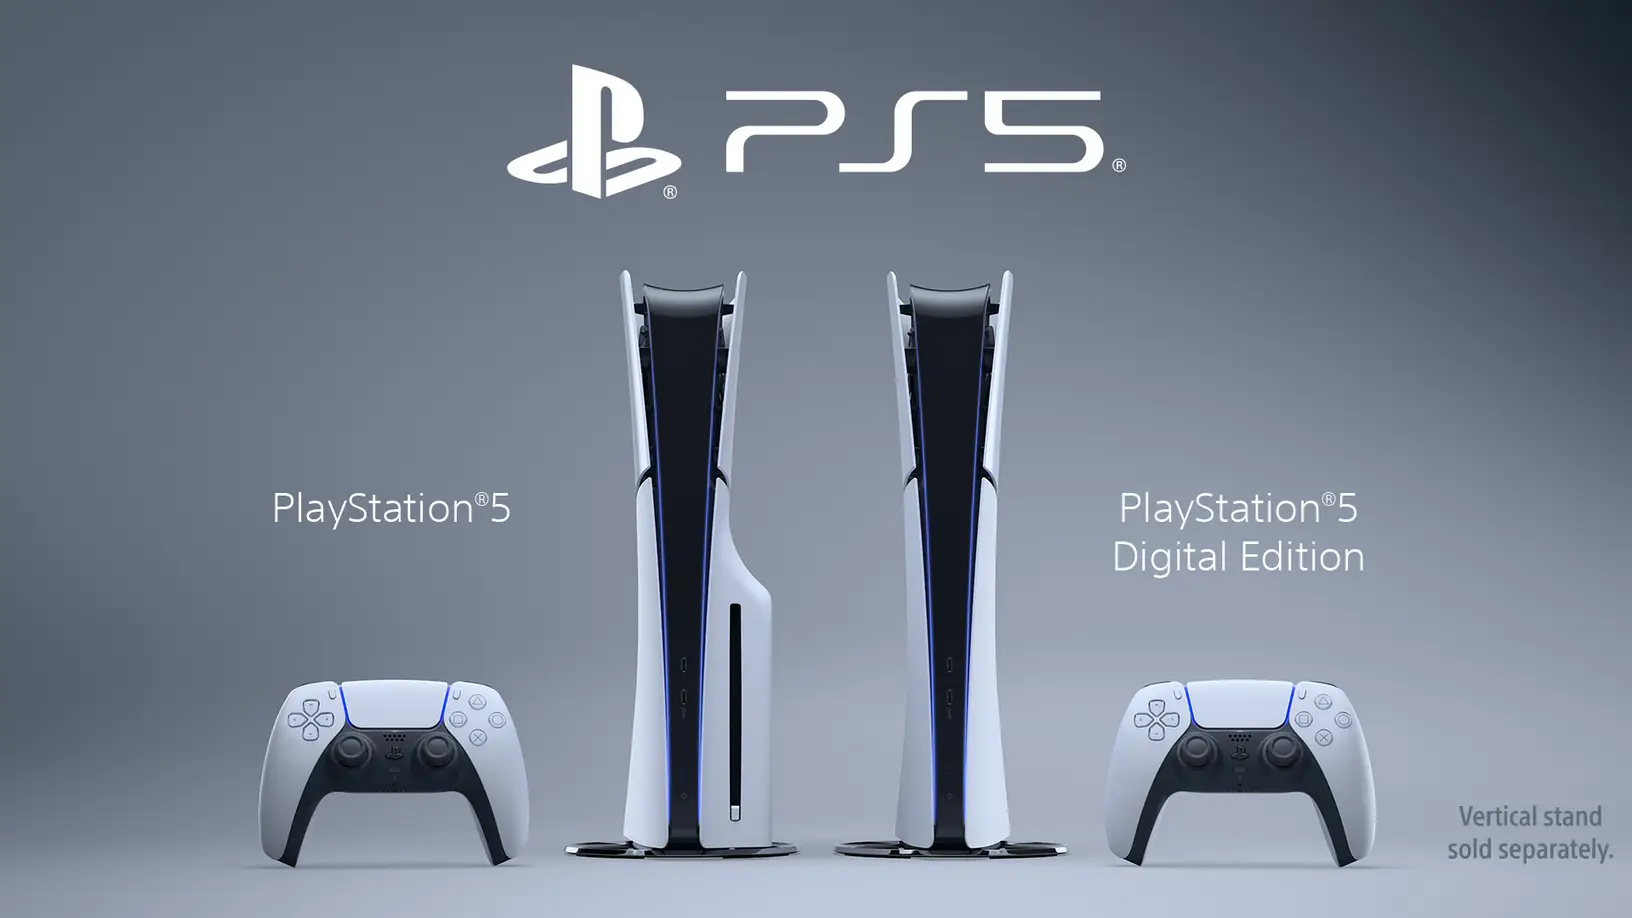 Sony aumenta preços do seu PlayStation 5 devido à inflação - 25/08/2022 -  Tec - Folha